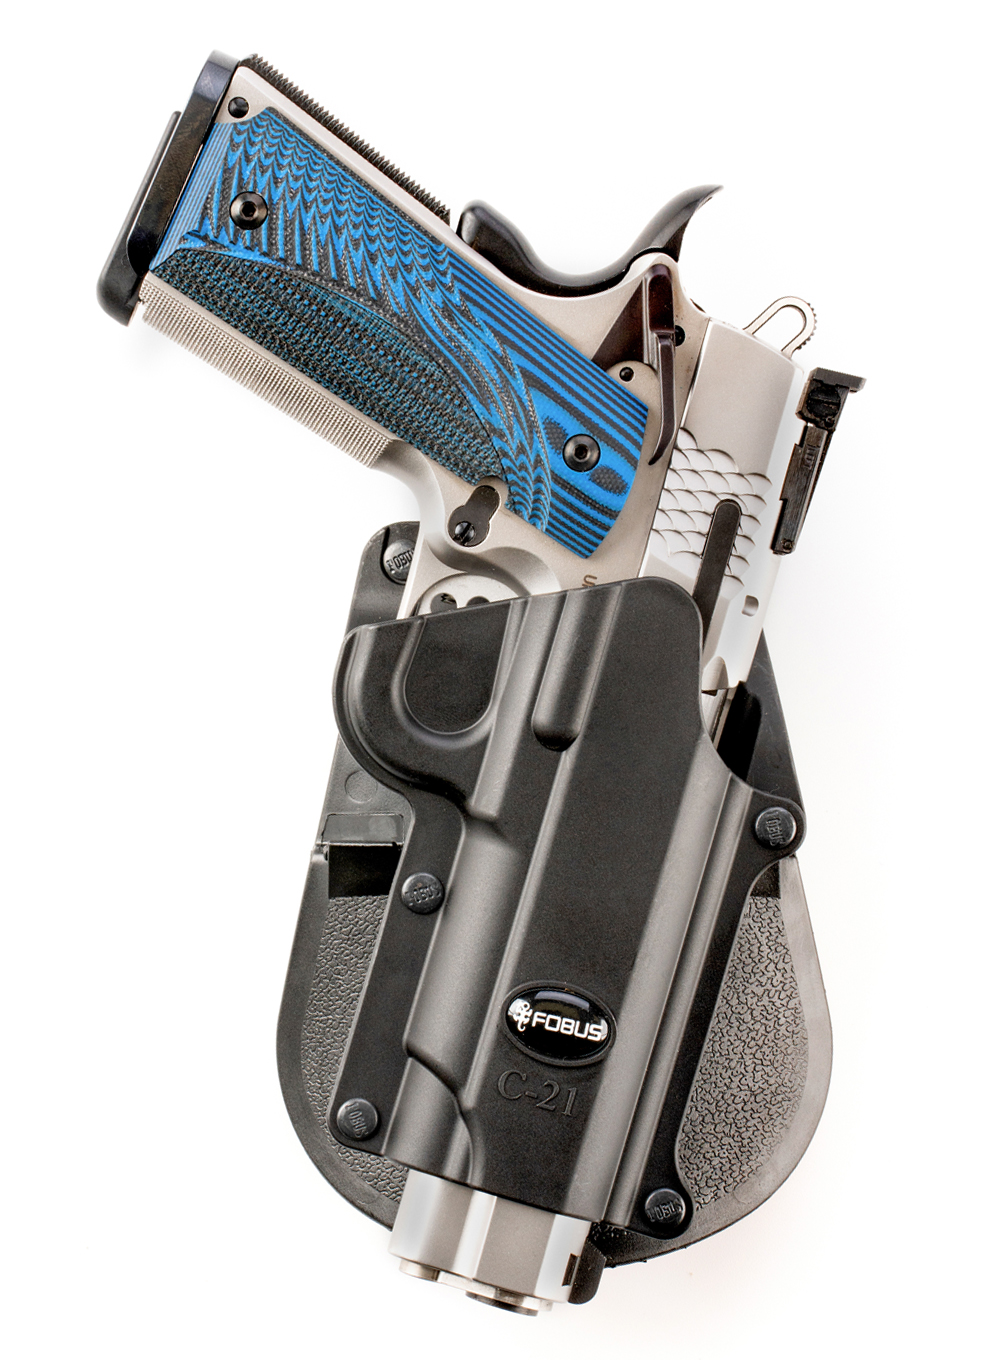 Fobus mini paddle holster pour Colt 1911 sans rails pistolet-C-21B 